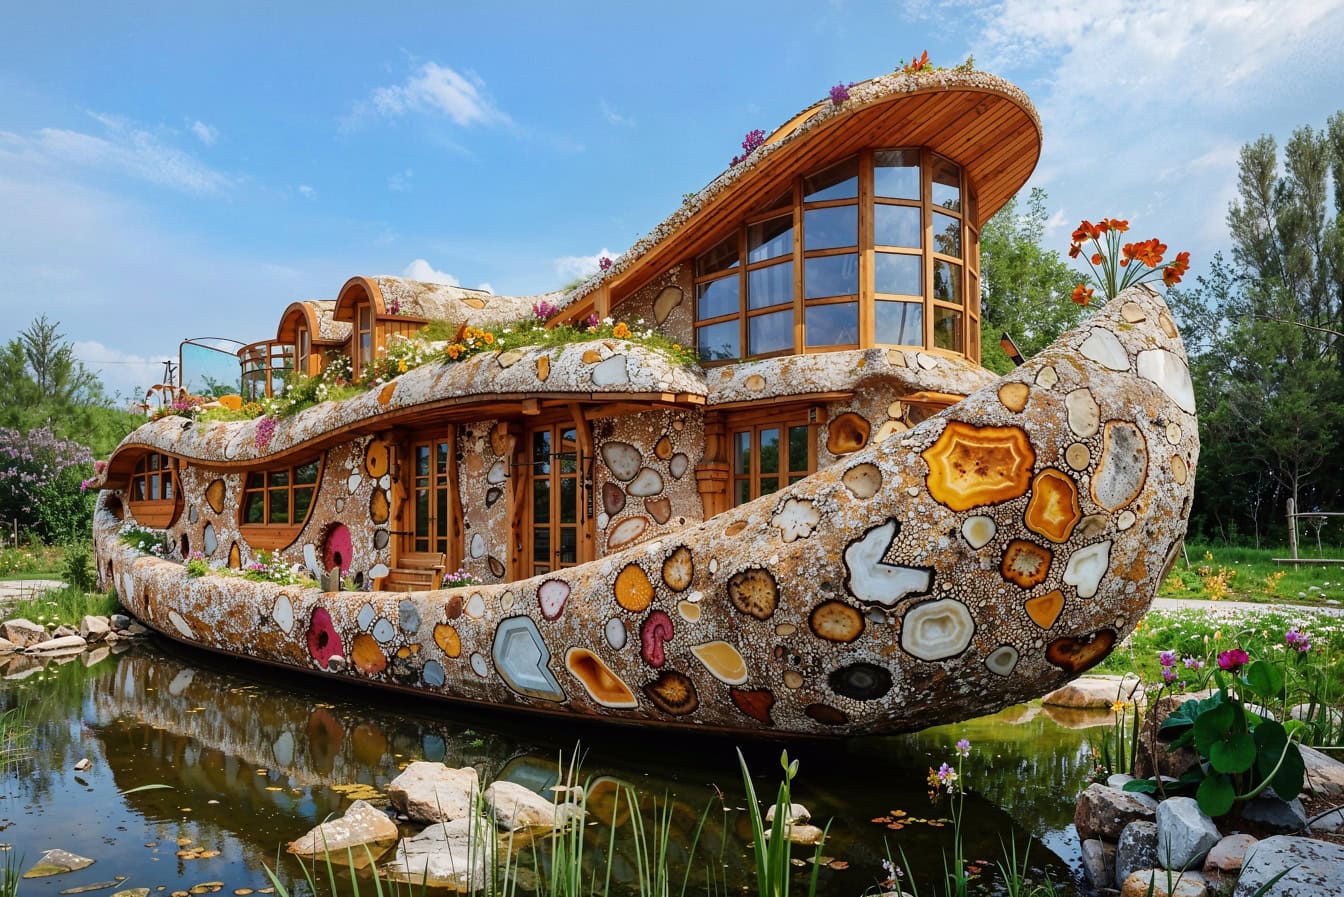 Koncepcja domu w kształcie futurystyczno-bajkowej łódki na wodzie na podwórku